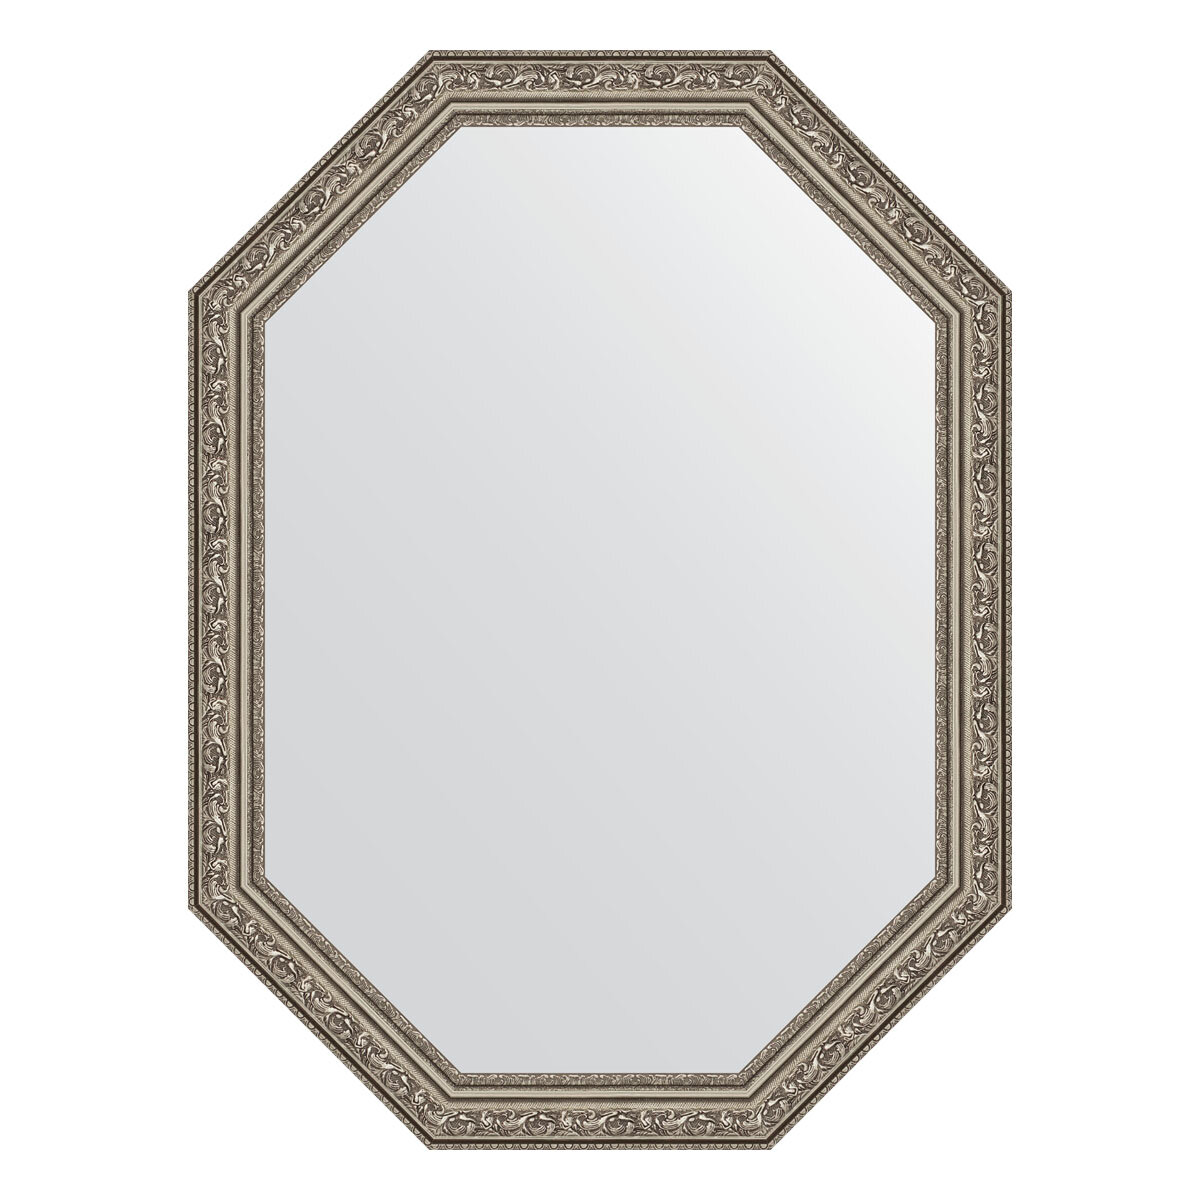 Зеркало настенное Polygon EVOFORM в багетной раме виньетка состаренное серебро, 60х80 см, для гостиной, прихожей, спальни и ванной комнаты, BY 7027